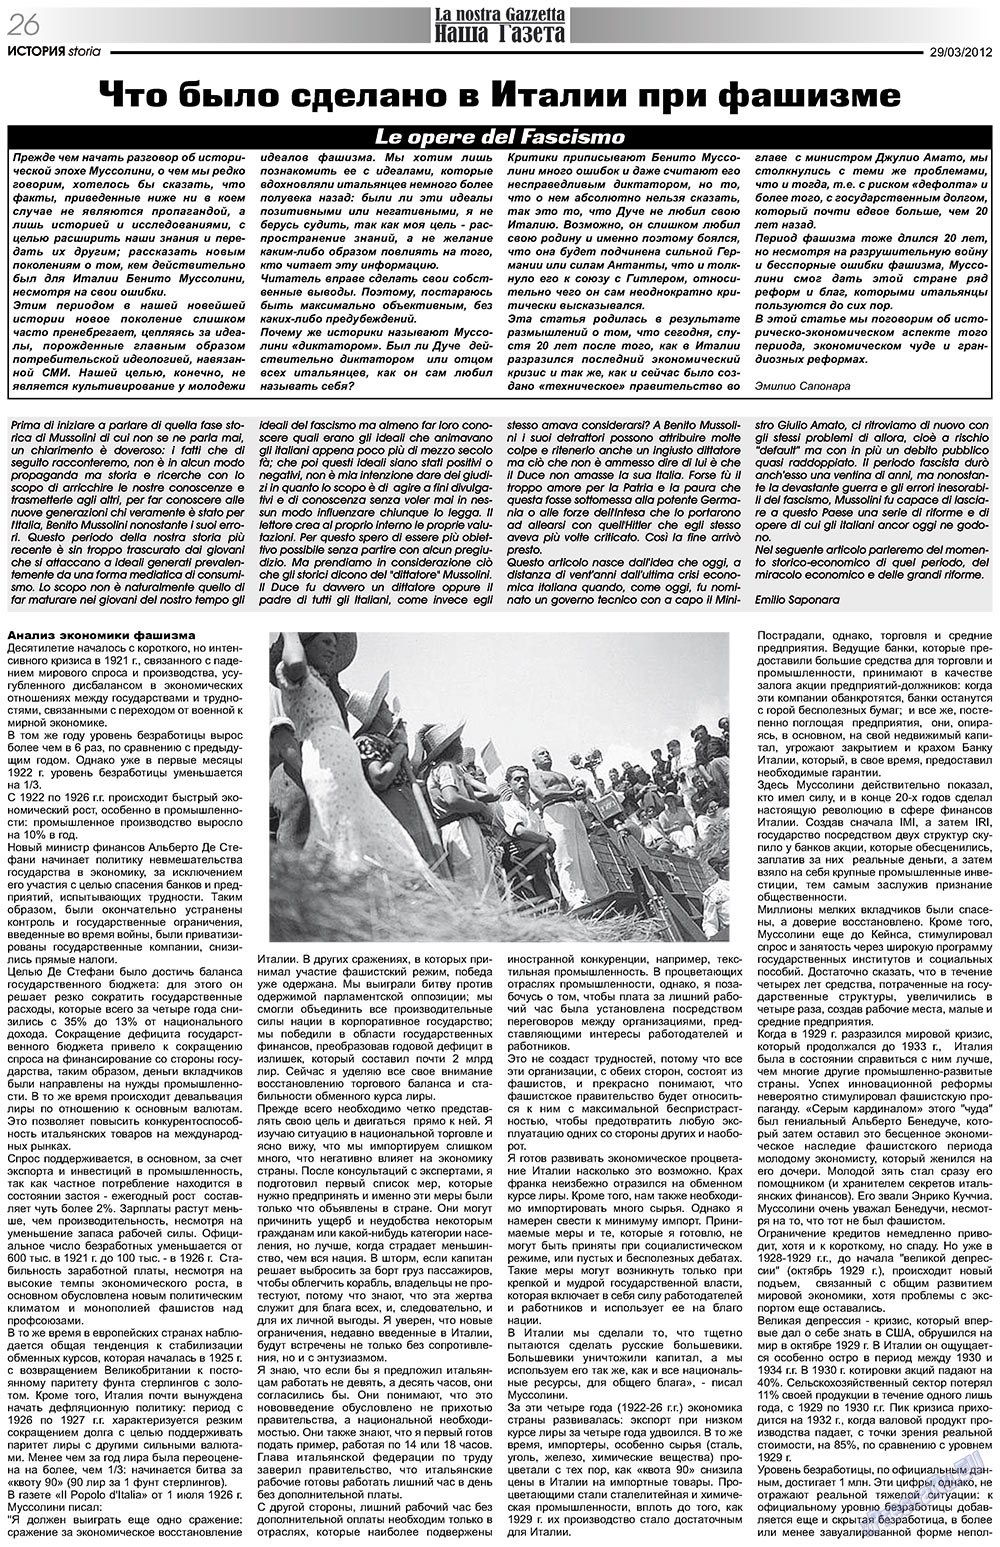 Наша Газета Италия, газета. 2012 №153 стр.26